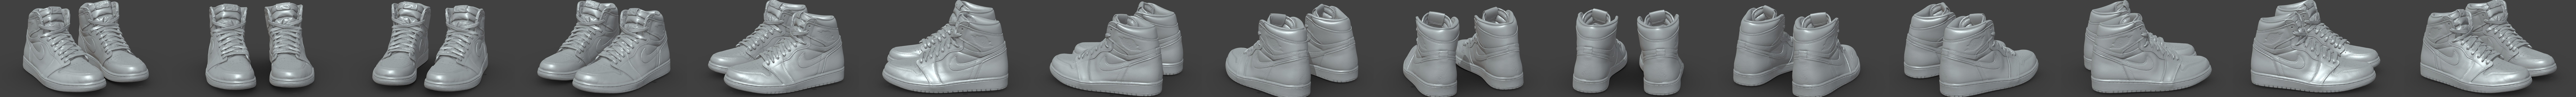 Nike Air Jordan 1 high x Louis vuitton - Buy Royalty Free 3D model by  Vincent Page (@vincentpage) [91d3da9]